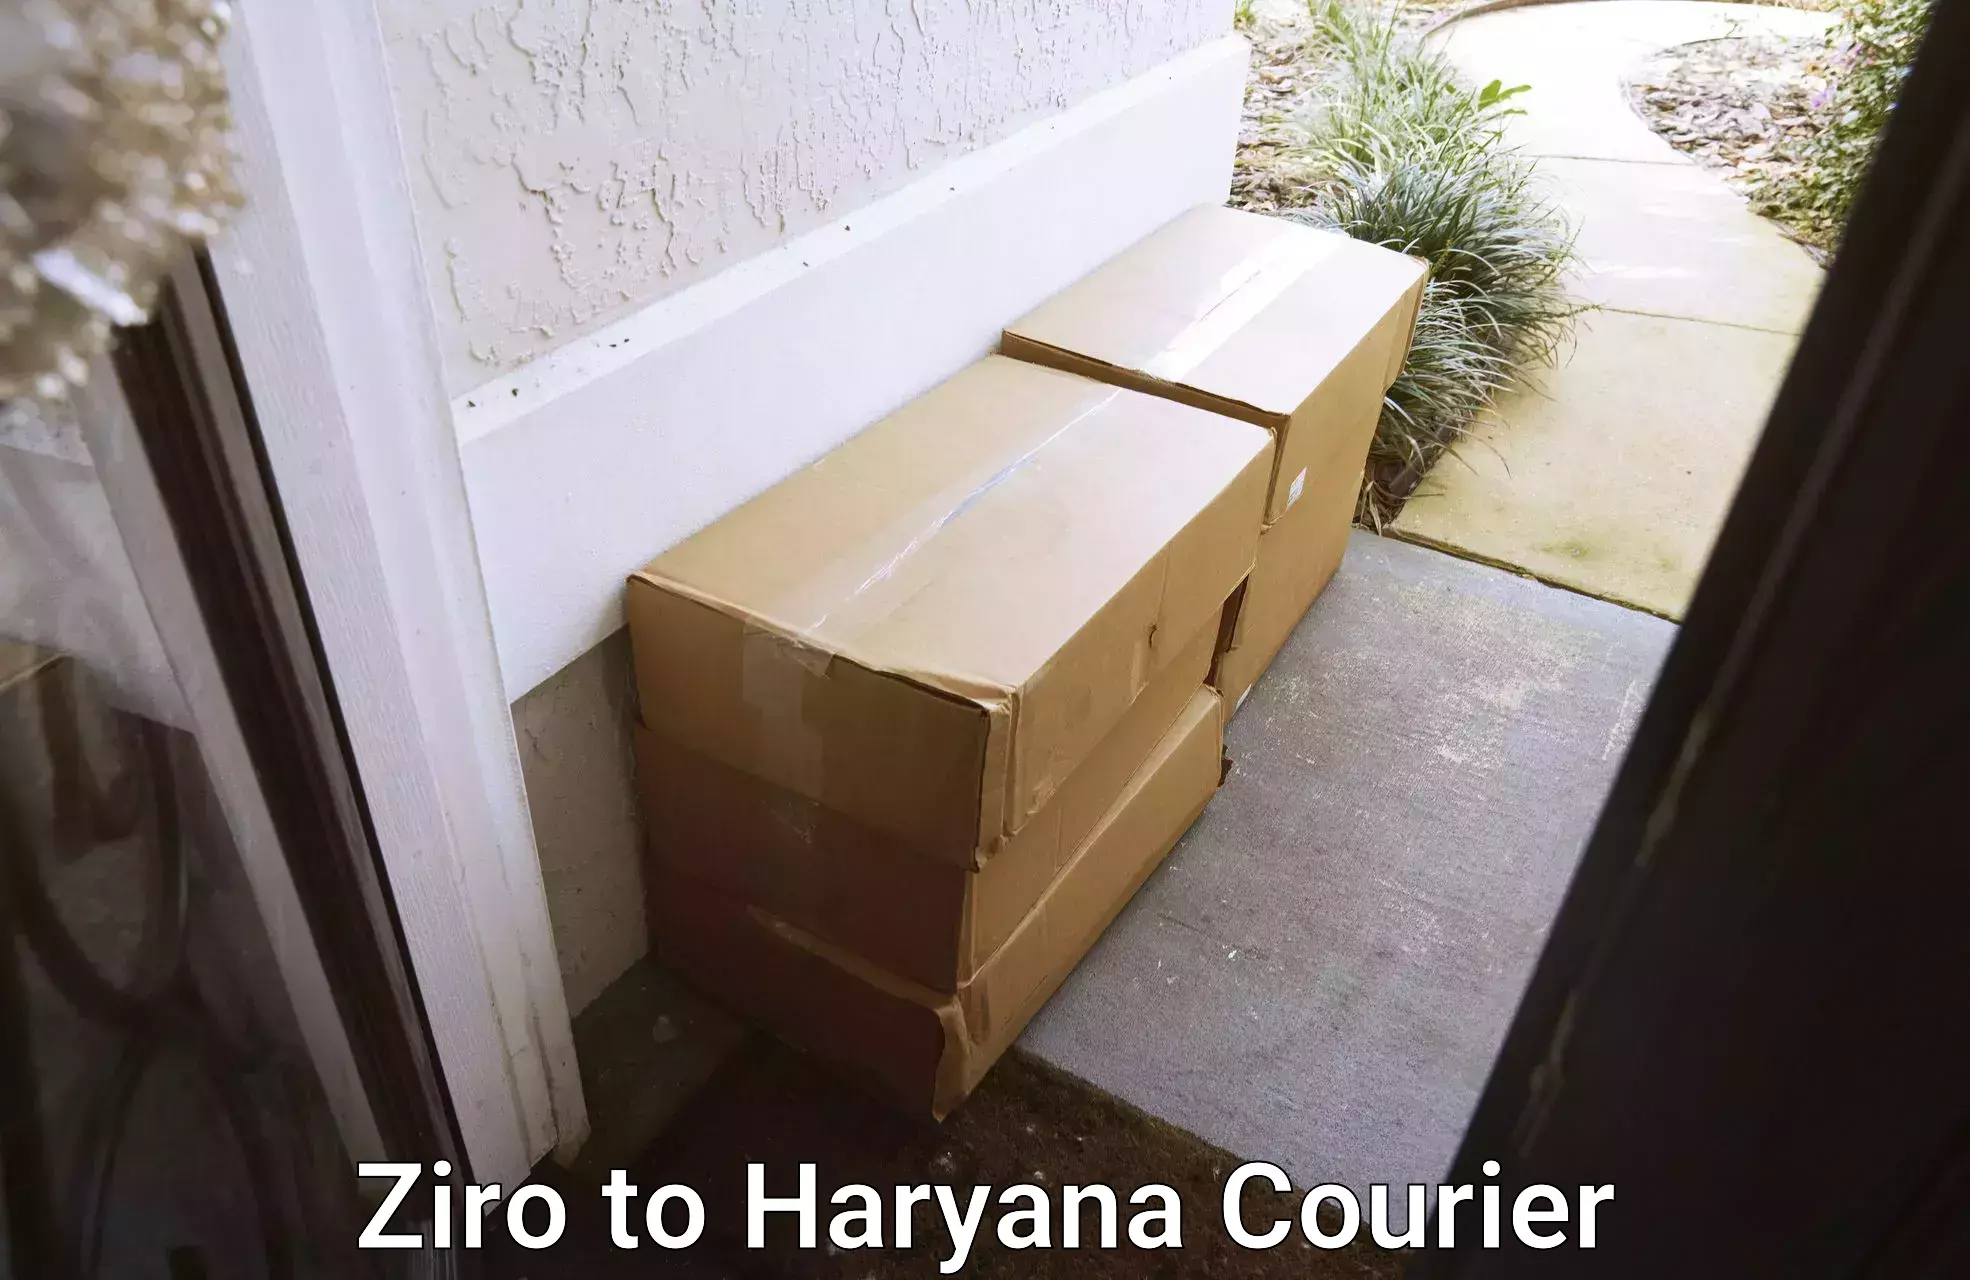 Professional courier handling Ziro to Chirya